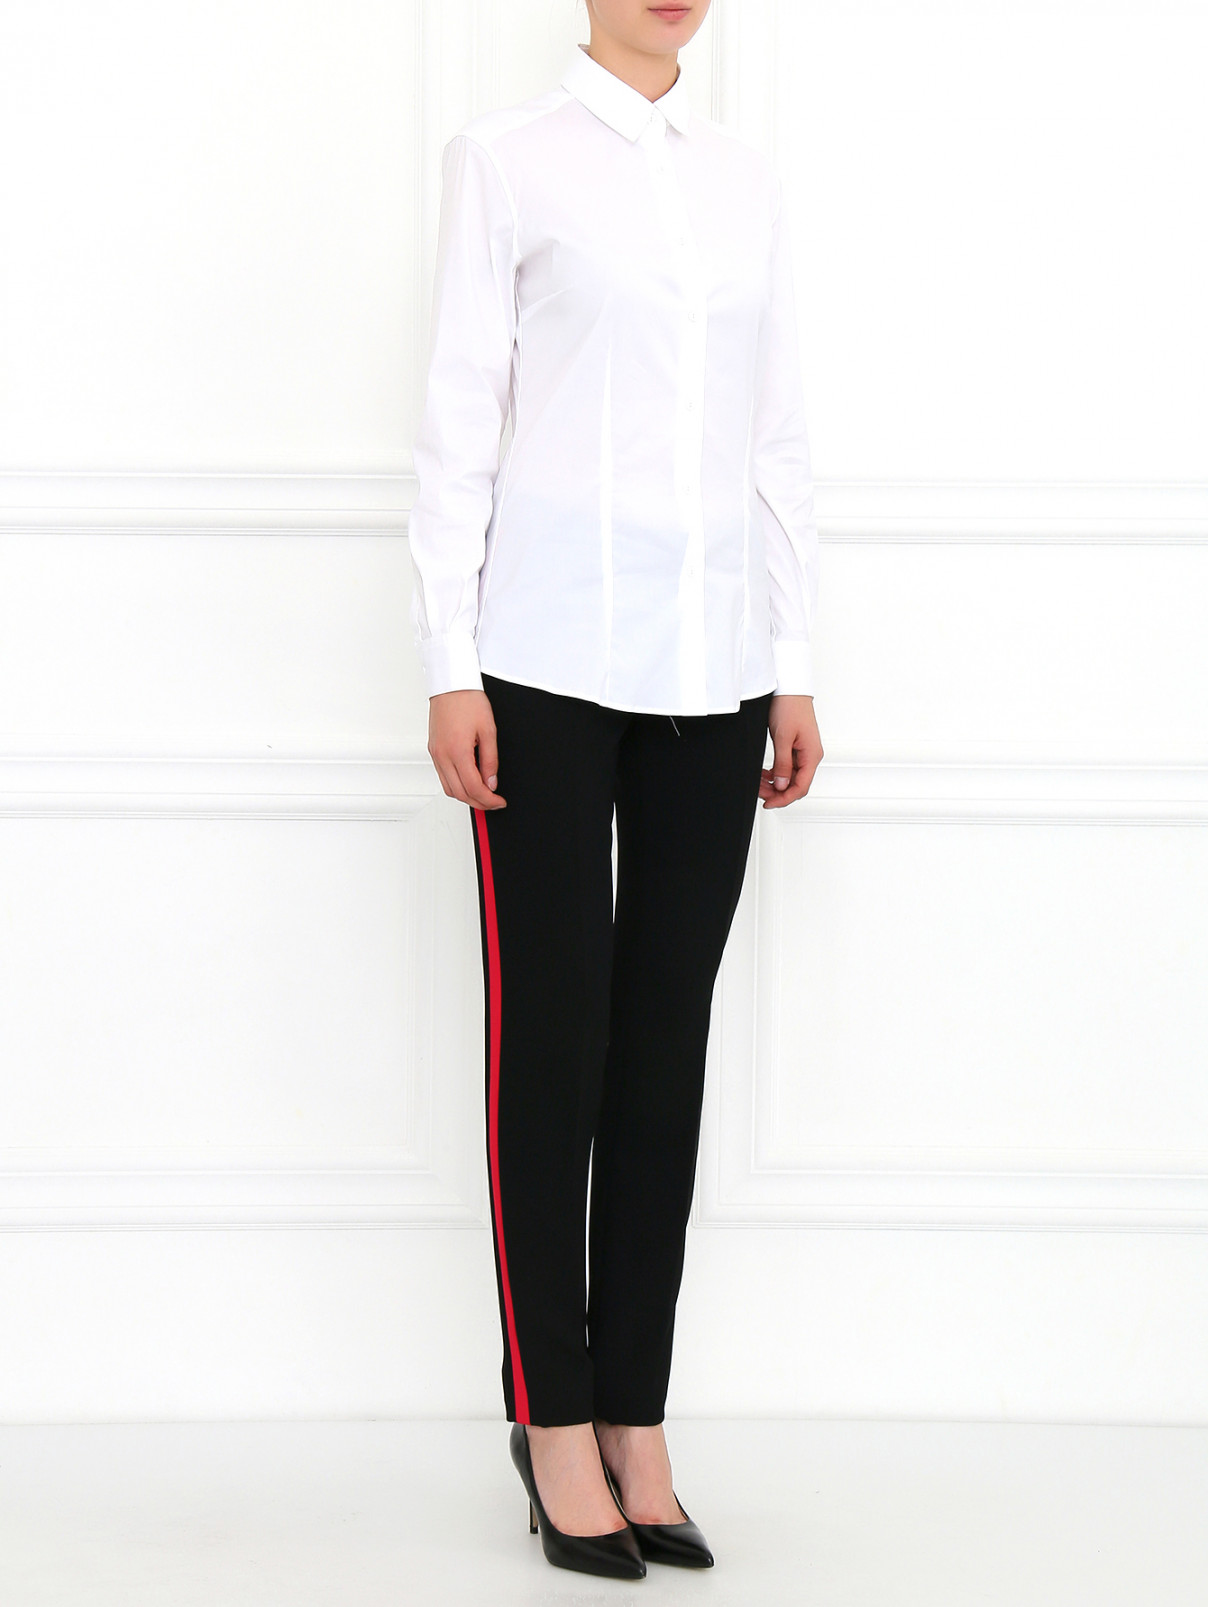 Узкие брюки с контрастными лампасами Barbara Bui  –  Модель Общий вид  – Цвет:  Черный